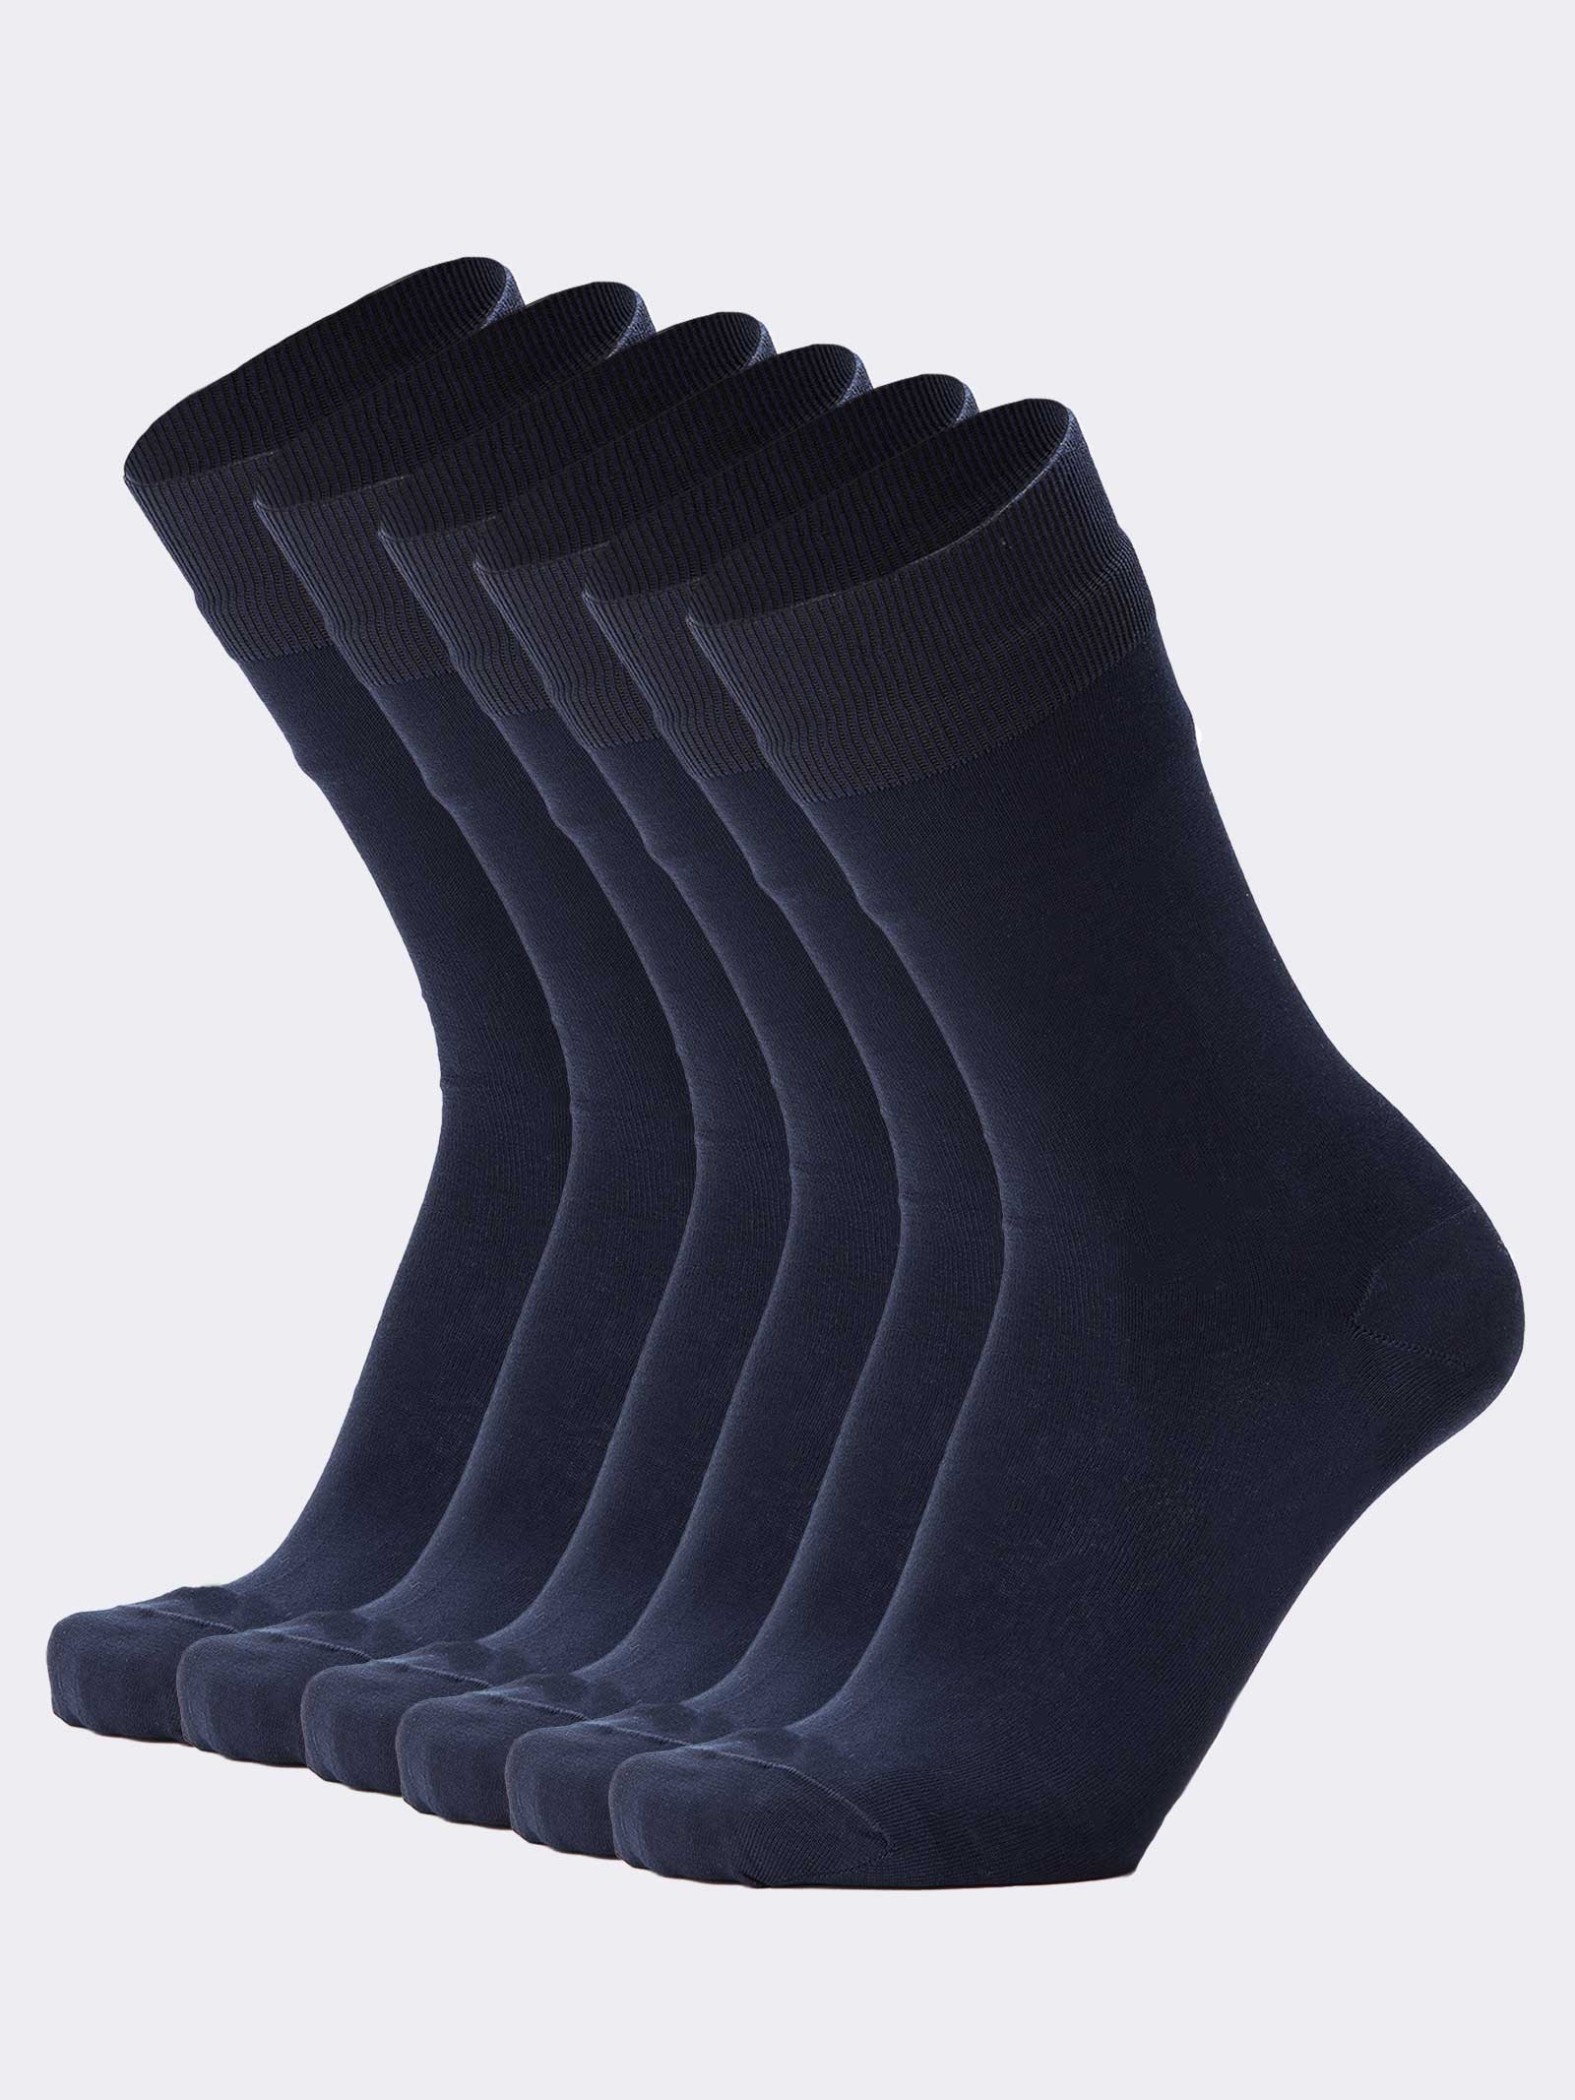 6 paia calze corte Uomo in Cotone Filo di Scozia - Colori Classici